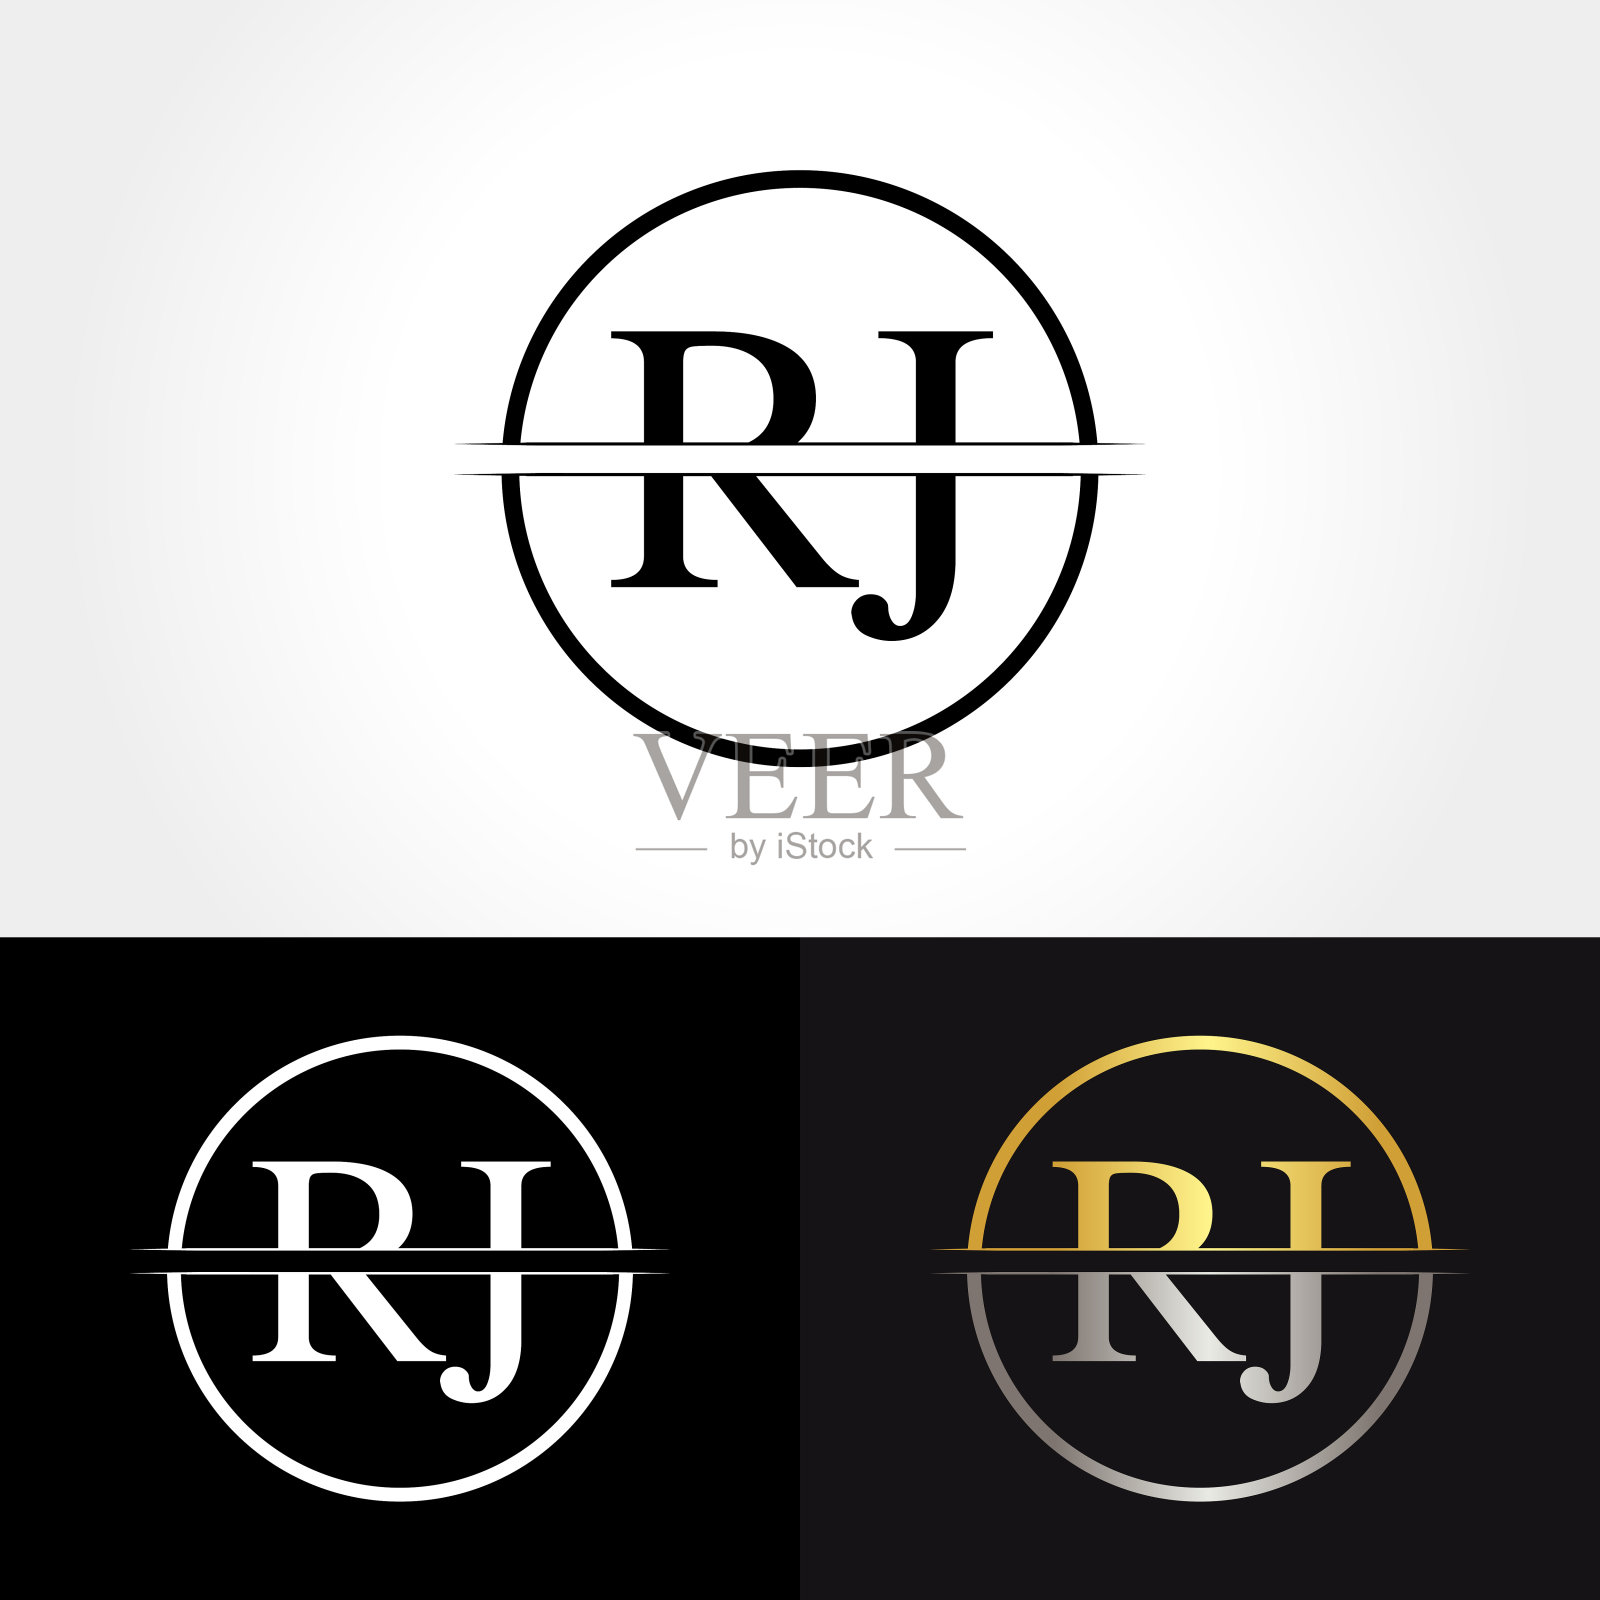 抽象字母RJ标志设计矢量模板。RJ字母标志设计插画图片素材